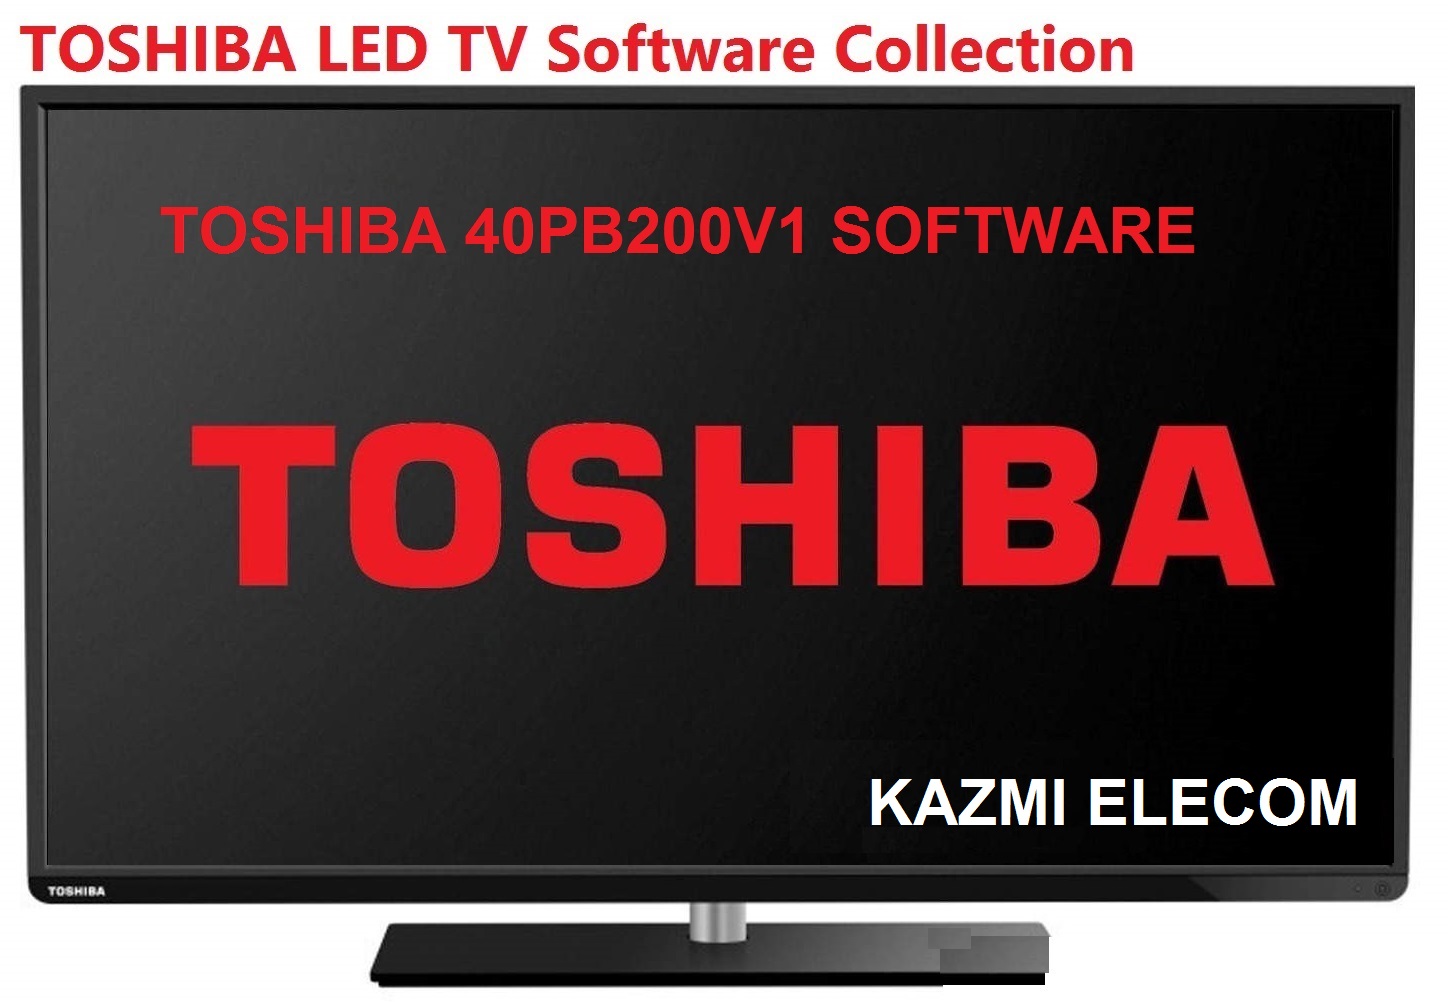 Toshiba 40Pb200V1